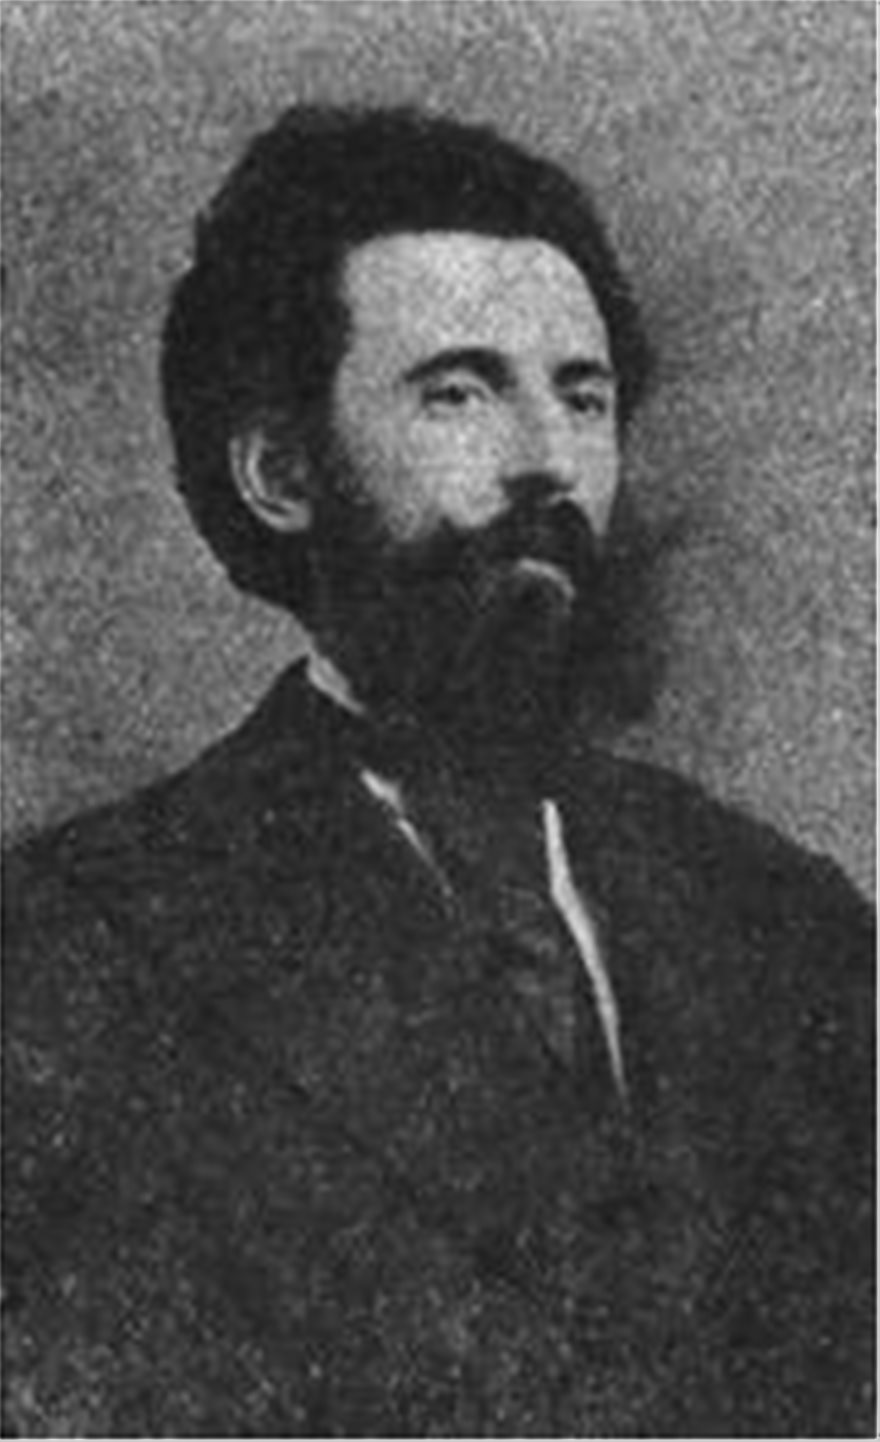 Δημήτριος Λάλλας (1848 - 1911): Ένας μεγάλος Μακεδόνας συνθέτης και πατριώτης - Φωτογραφία 2